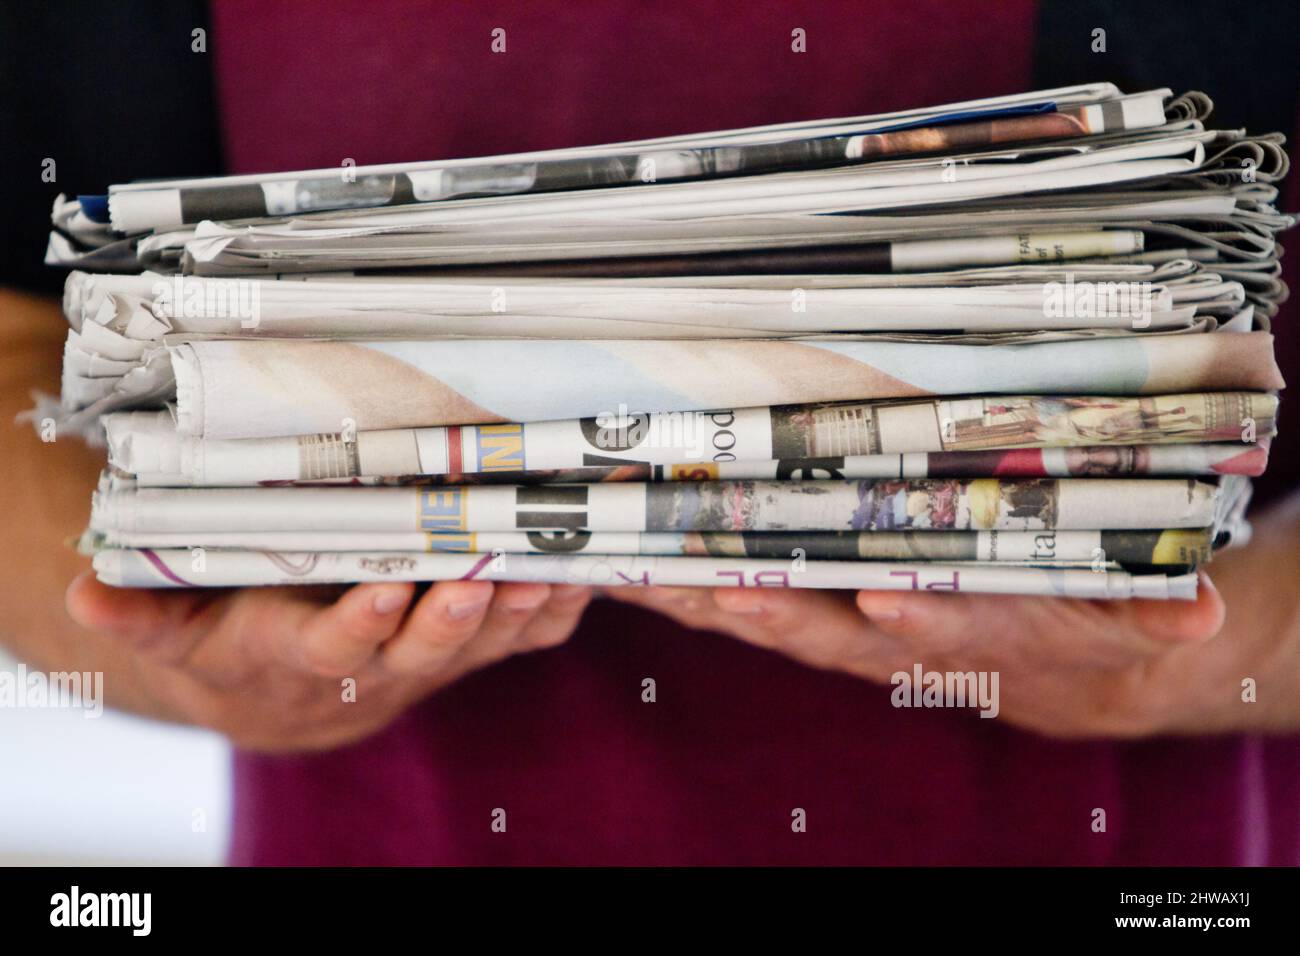 Tun Sie Ihren Teil. Ausgeschnittene Aufnahme einer Person, die Zeitungen zum Recycling hält. Stockfoto